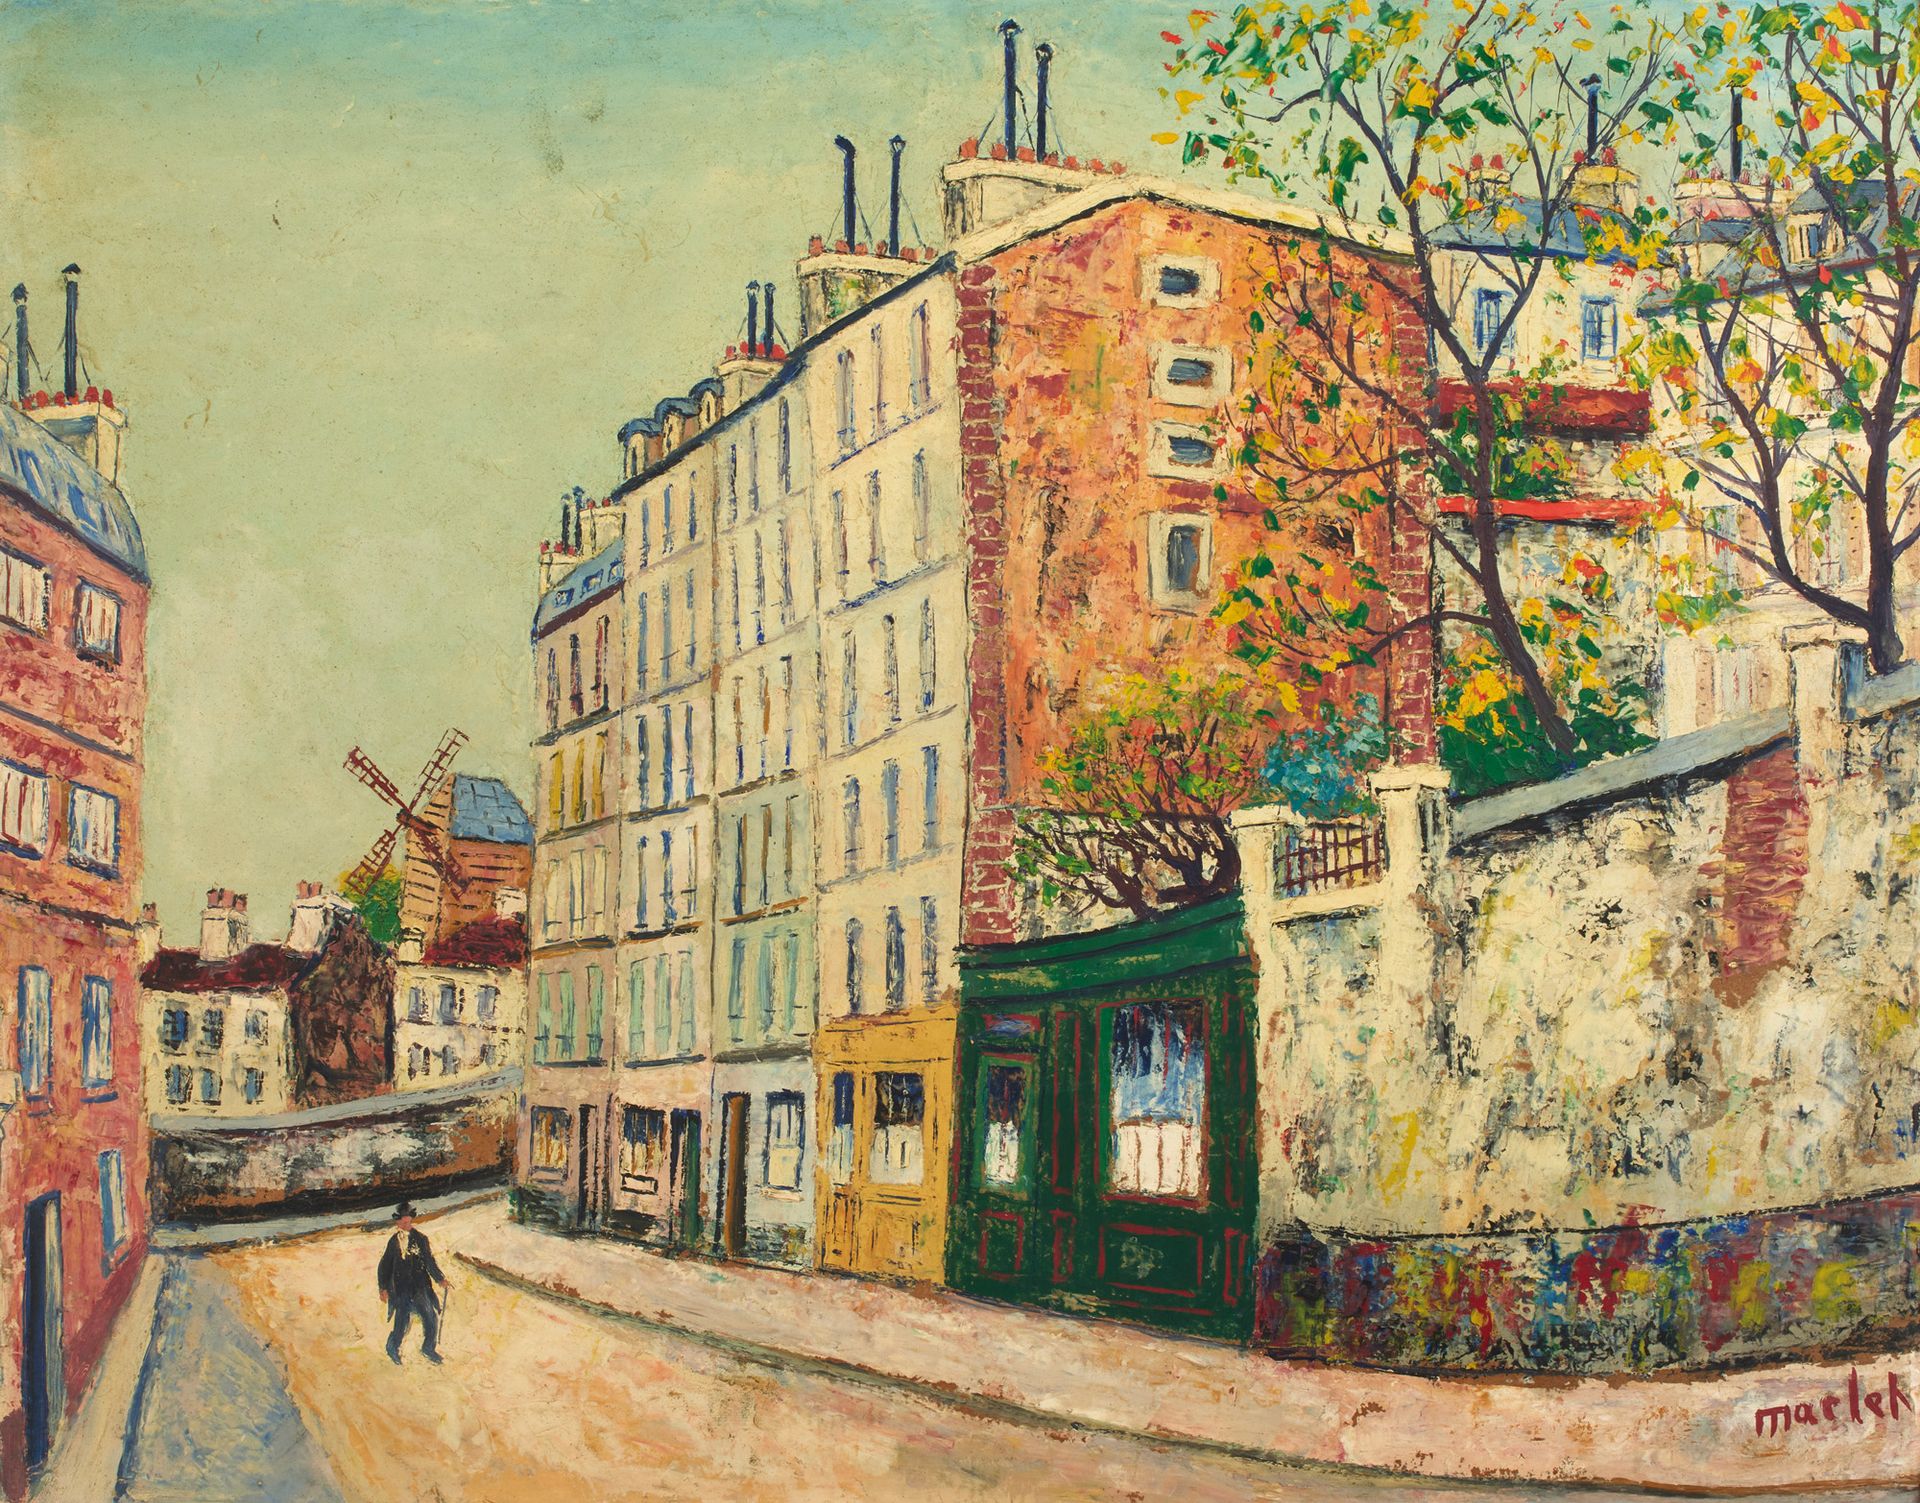 Elisée MACLET (1881-1962) 埃利塞-马克莱(1881-1962)

蒙马特的街道和磨坊

木板油画，右下角有签名

50 x 63 cm&hellip;